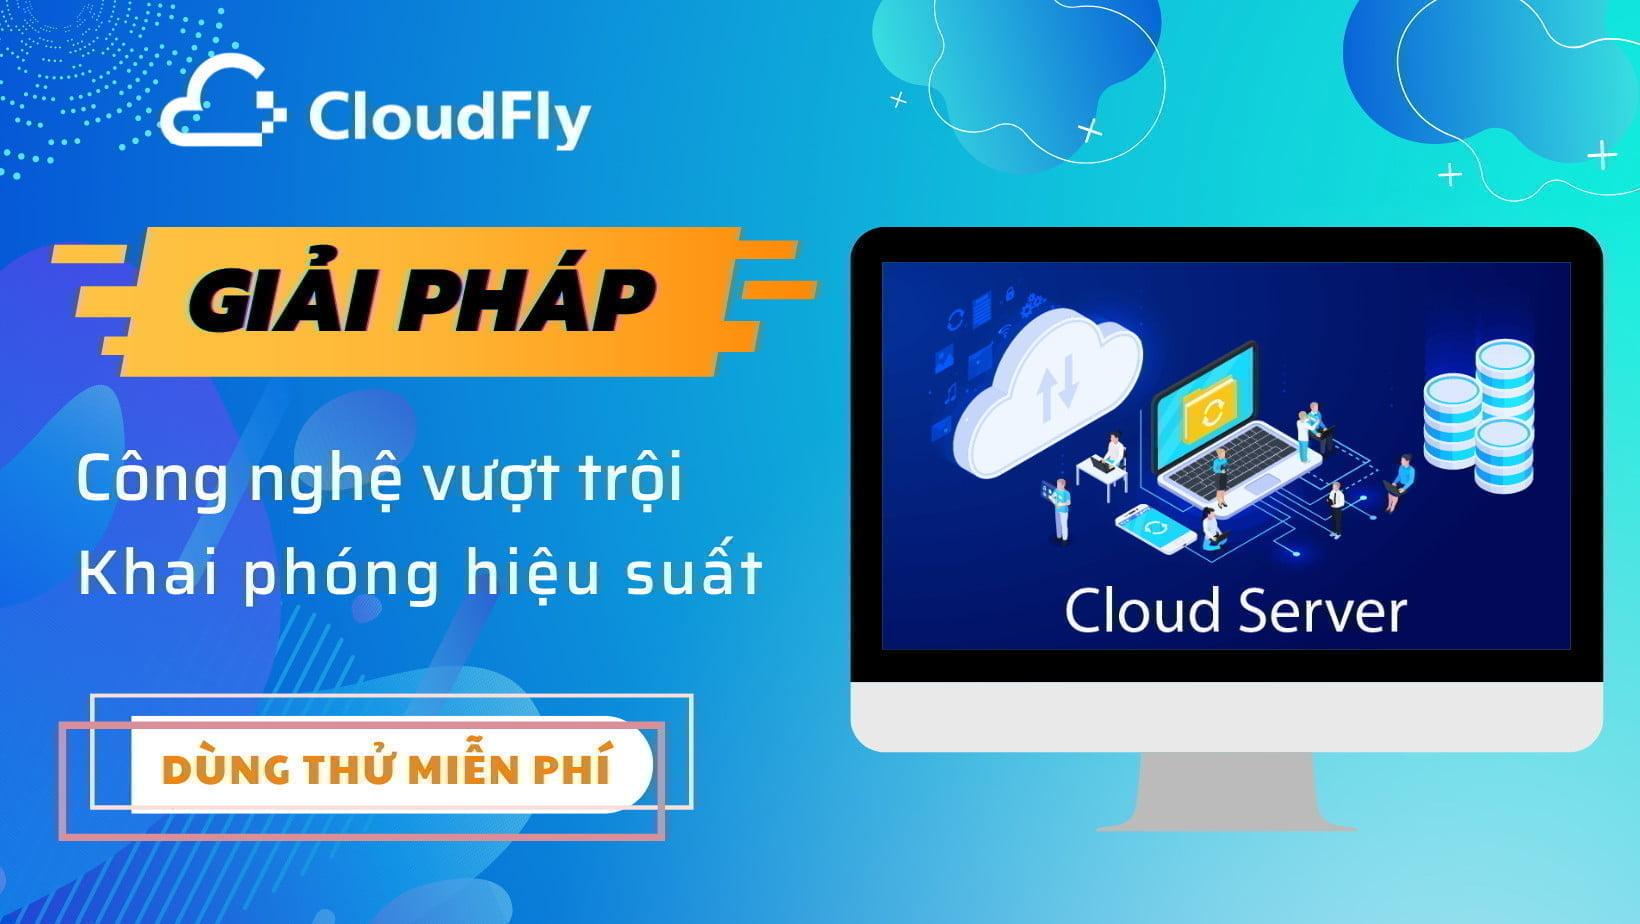 cloudfly cung cấp cloud storage chất lượng